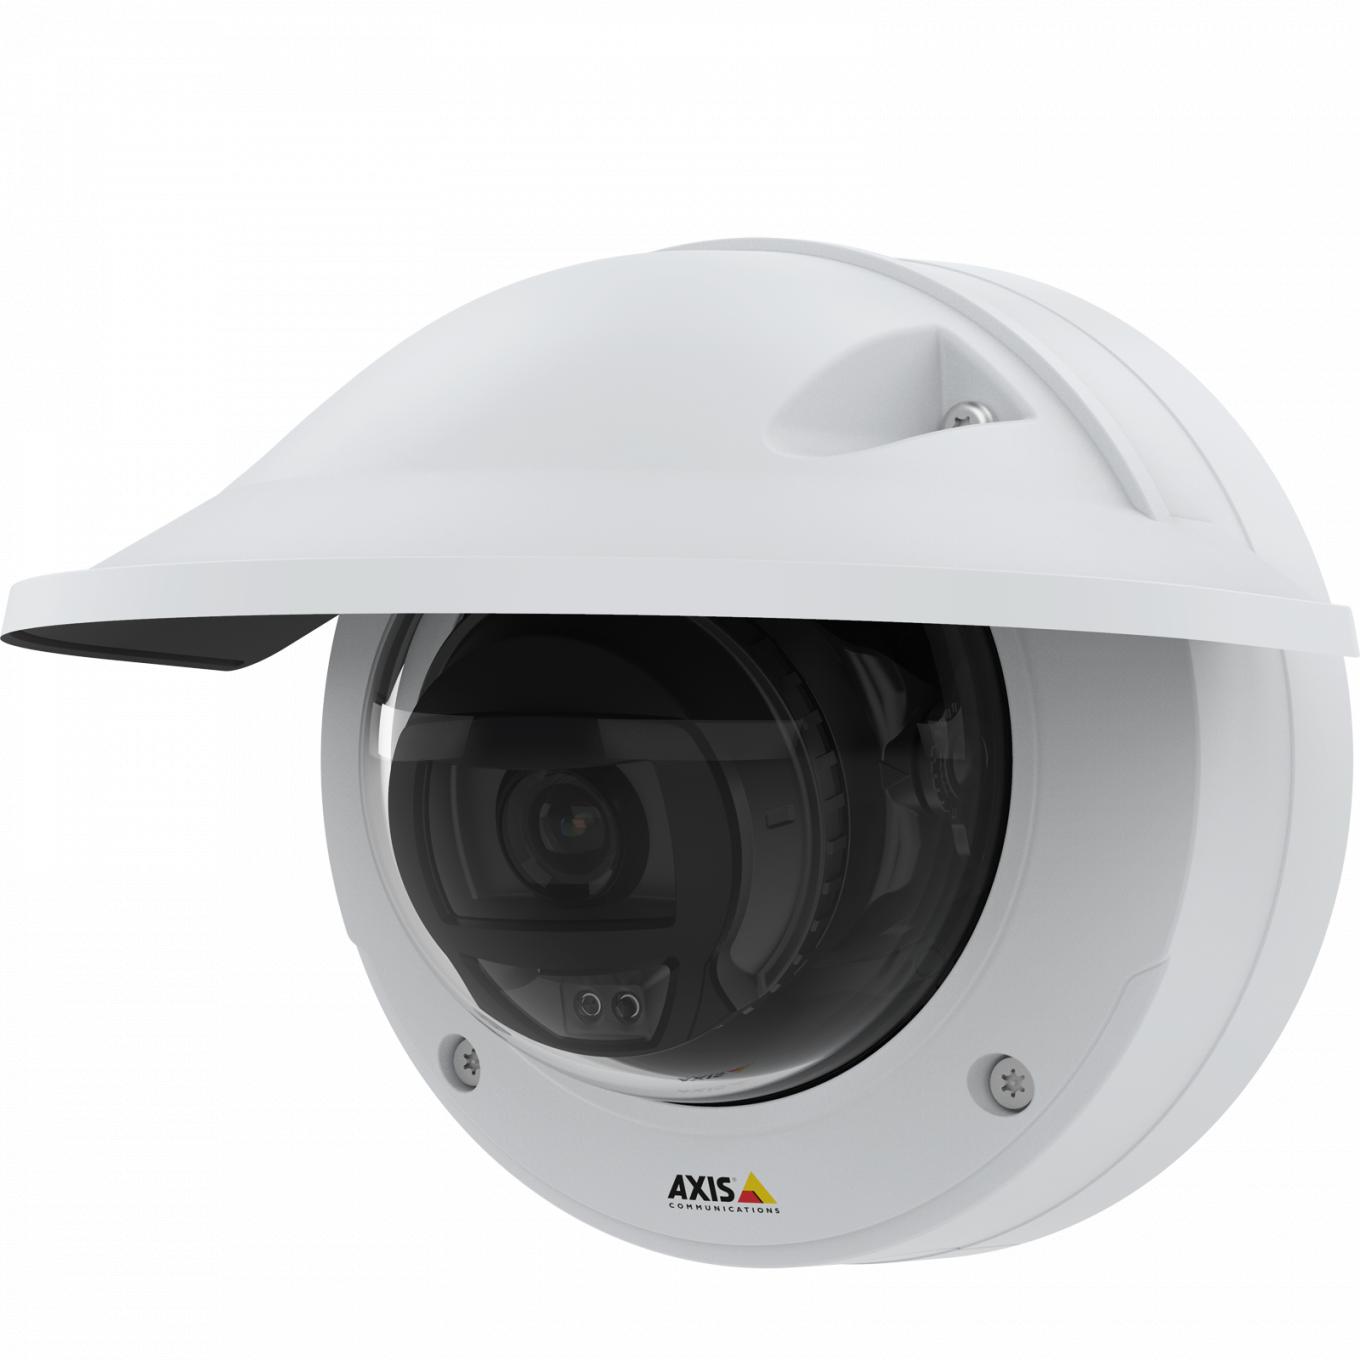 Kamera IP Camera AXIS p3245 lve hat HDTV 1080p Videoqualität. Die Kamera wird von links betrachtet und hat einen Wetterschutz.